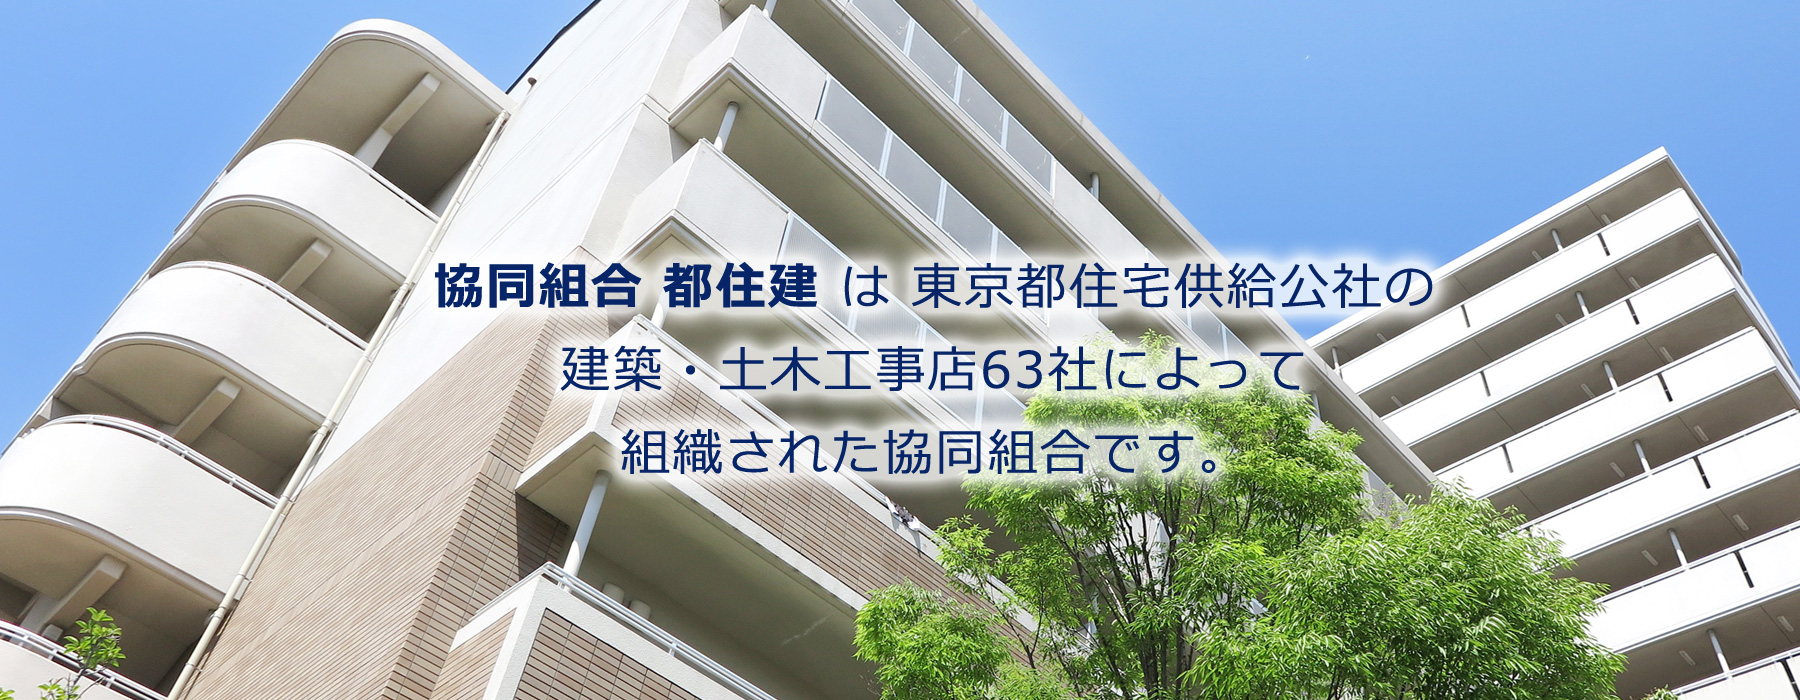 「協同組合 都住建」は東京都住宅供給公社の建築・土木工事店63社によって組織された協同組合です。